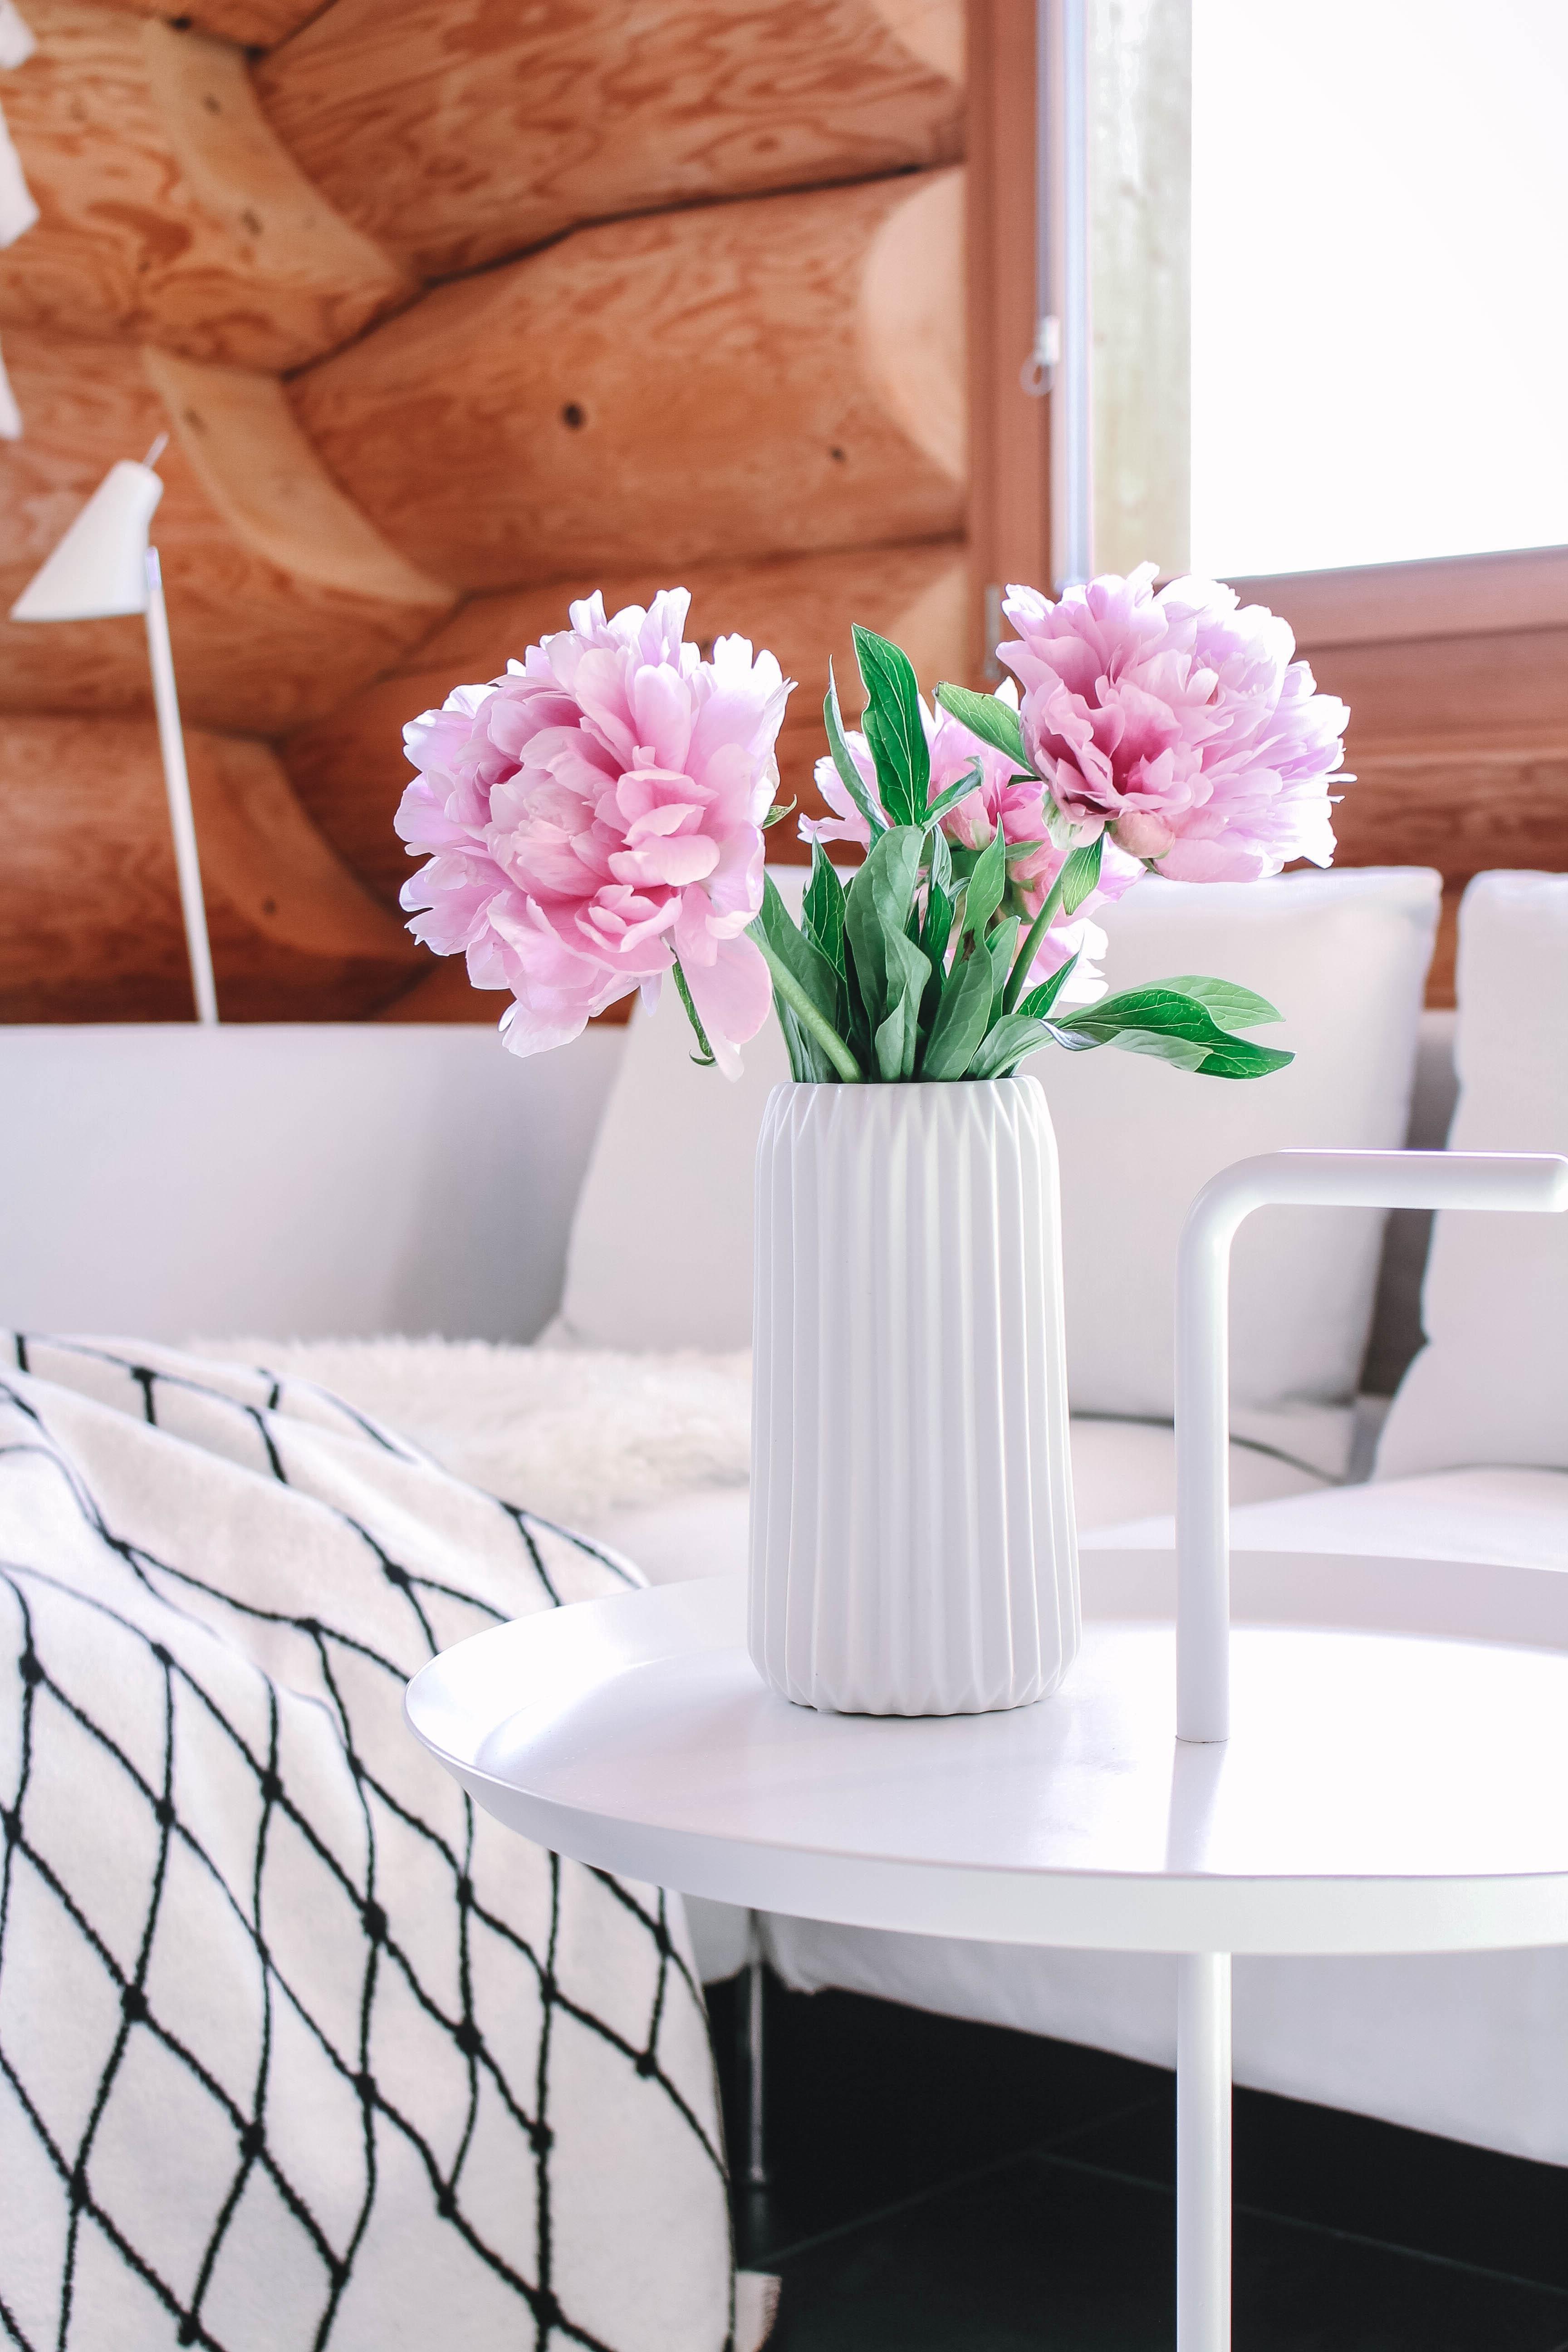 Sehnsucht nach Pfingstrosen. #flowerlove #interior #wohnzimmer #spring #livingroom #scandinaviandesign #nordichome